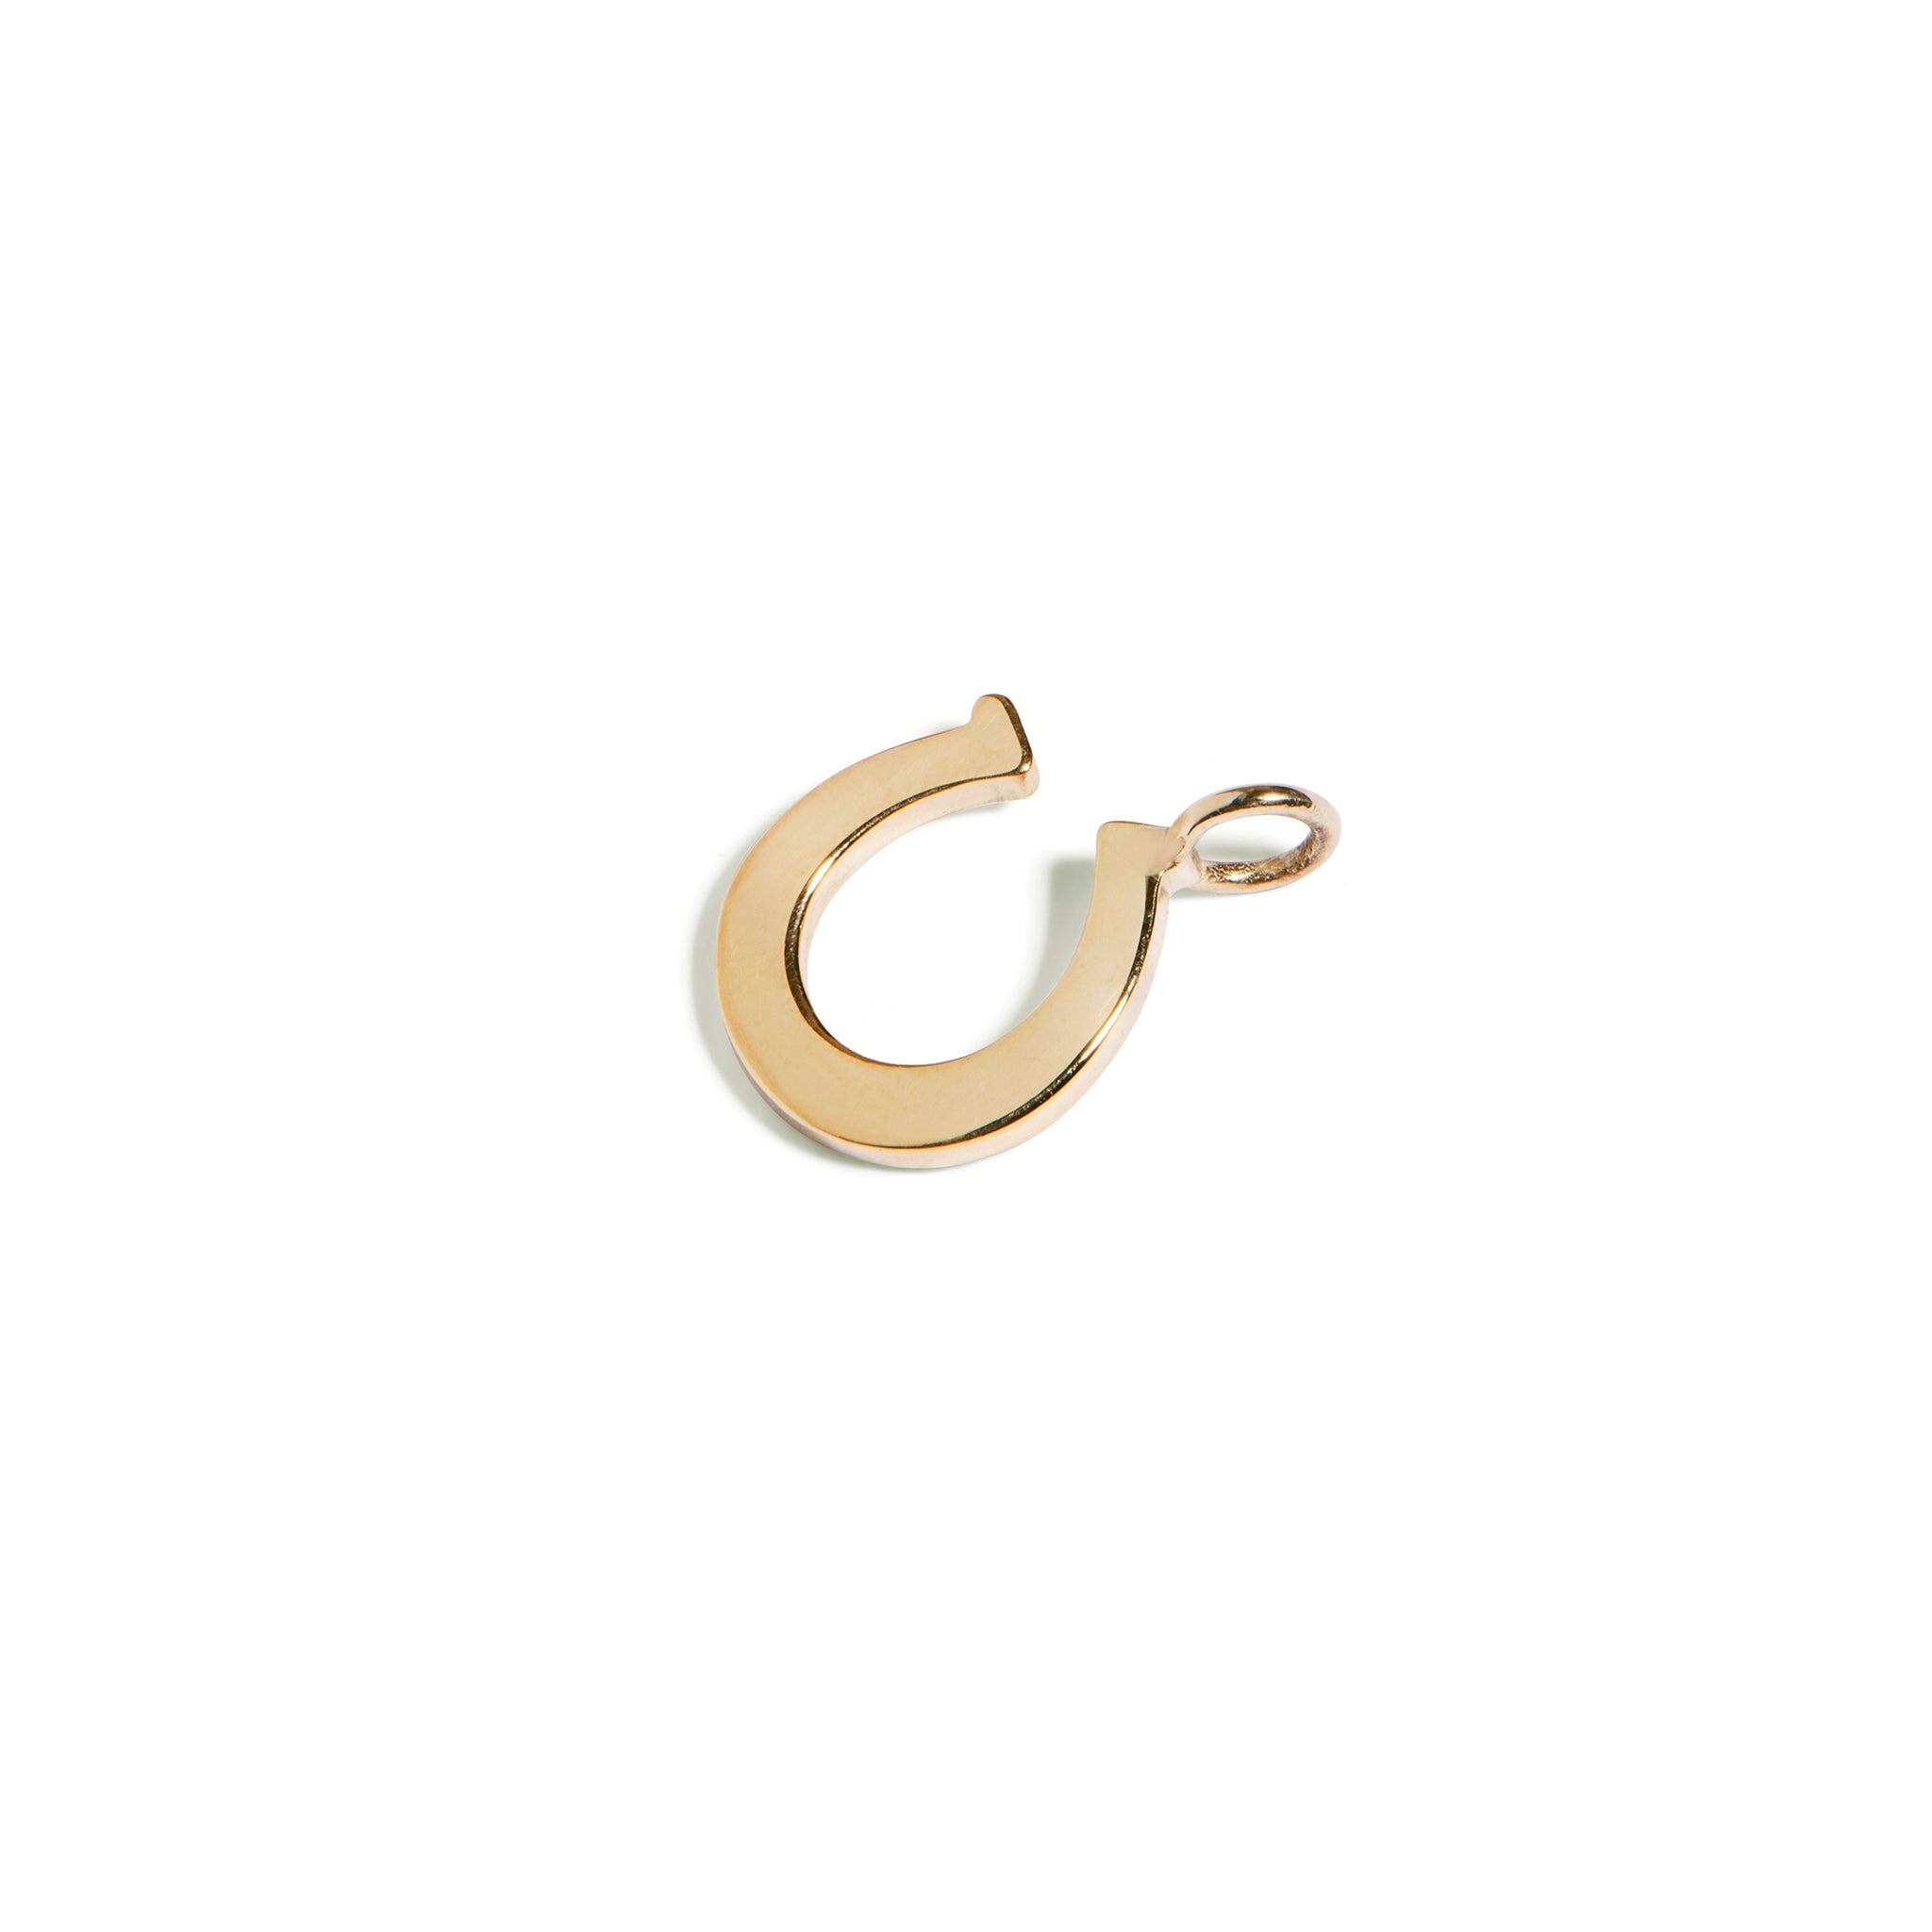 9ct gold horseshoe charm